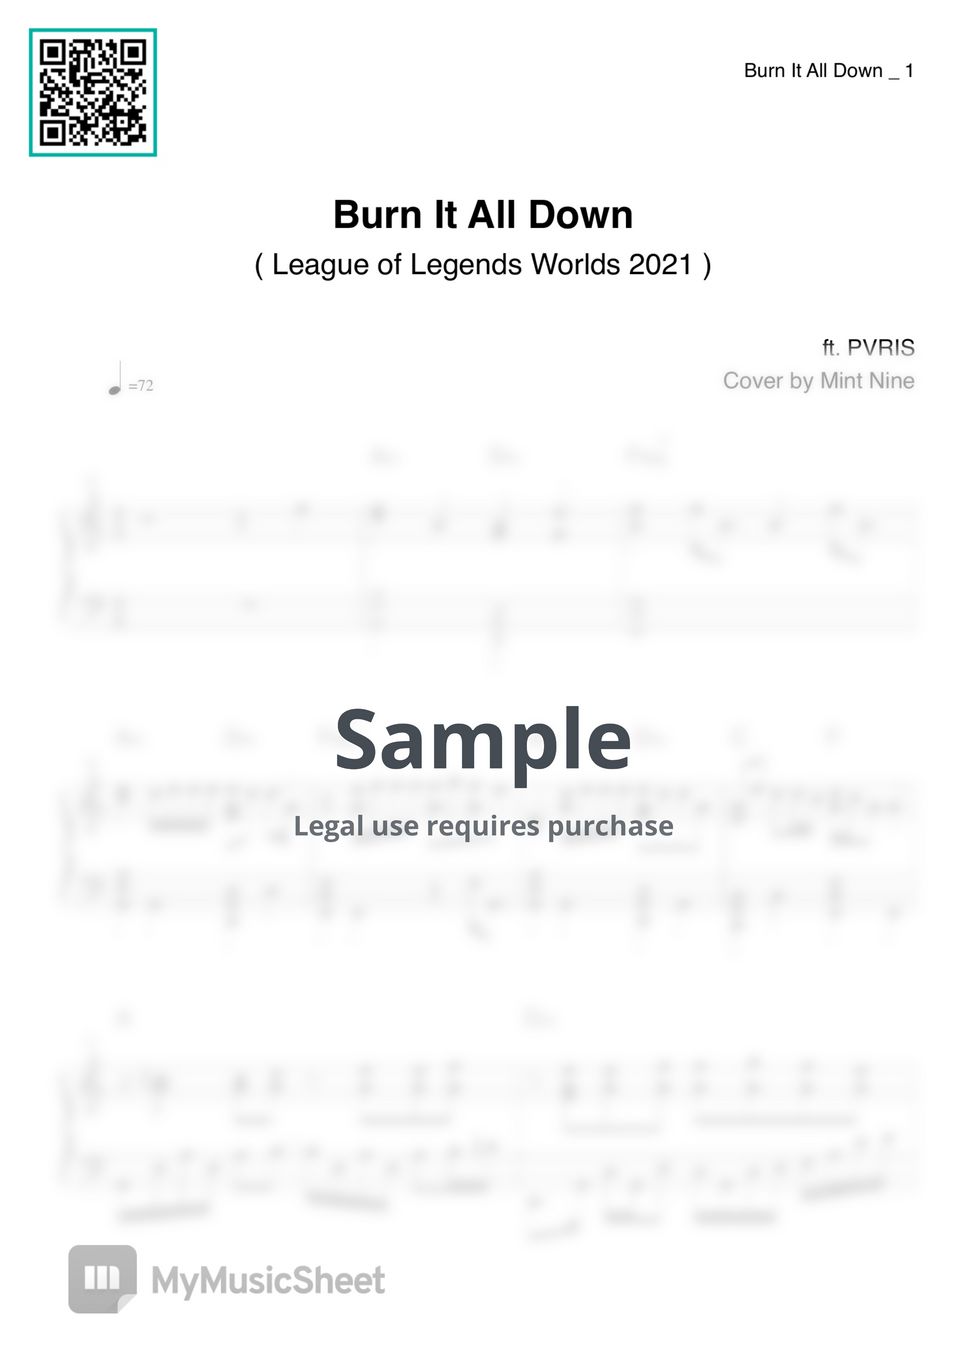 리그 오브 레전드 (롤) - Burn It All Down (2021 리그오브레전드) by PVRIS, Denzel Curry